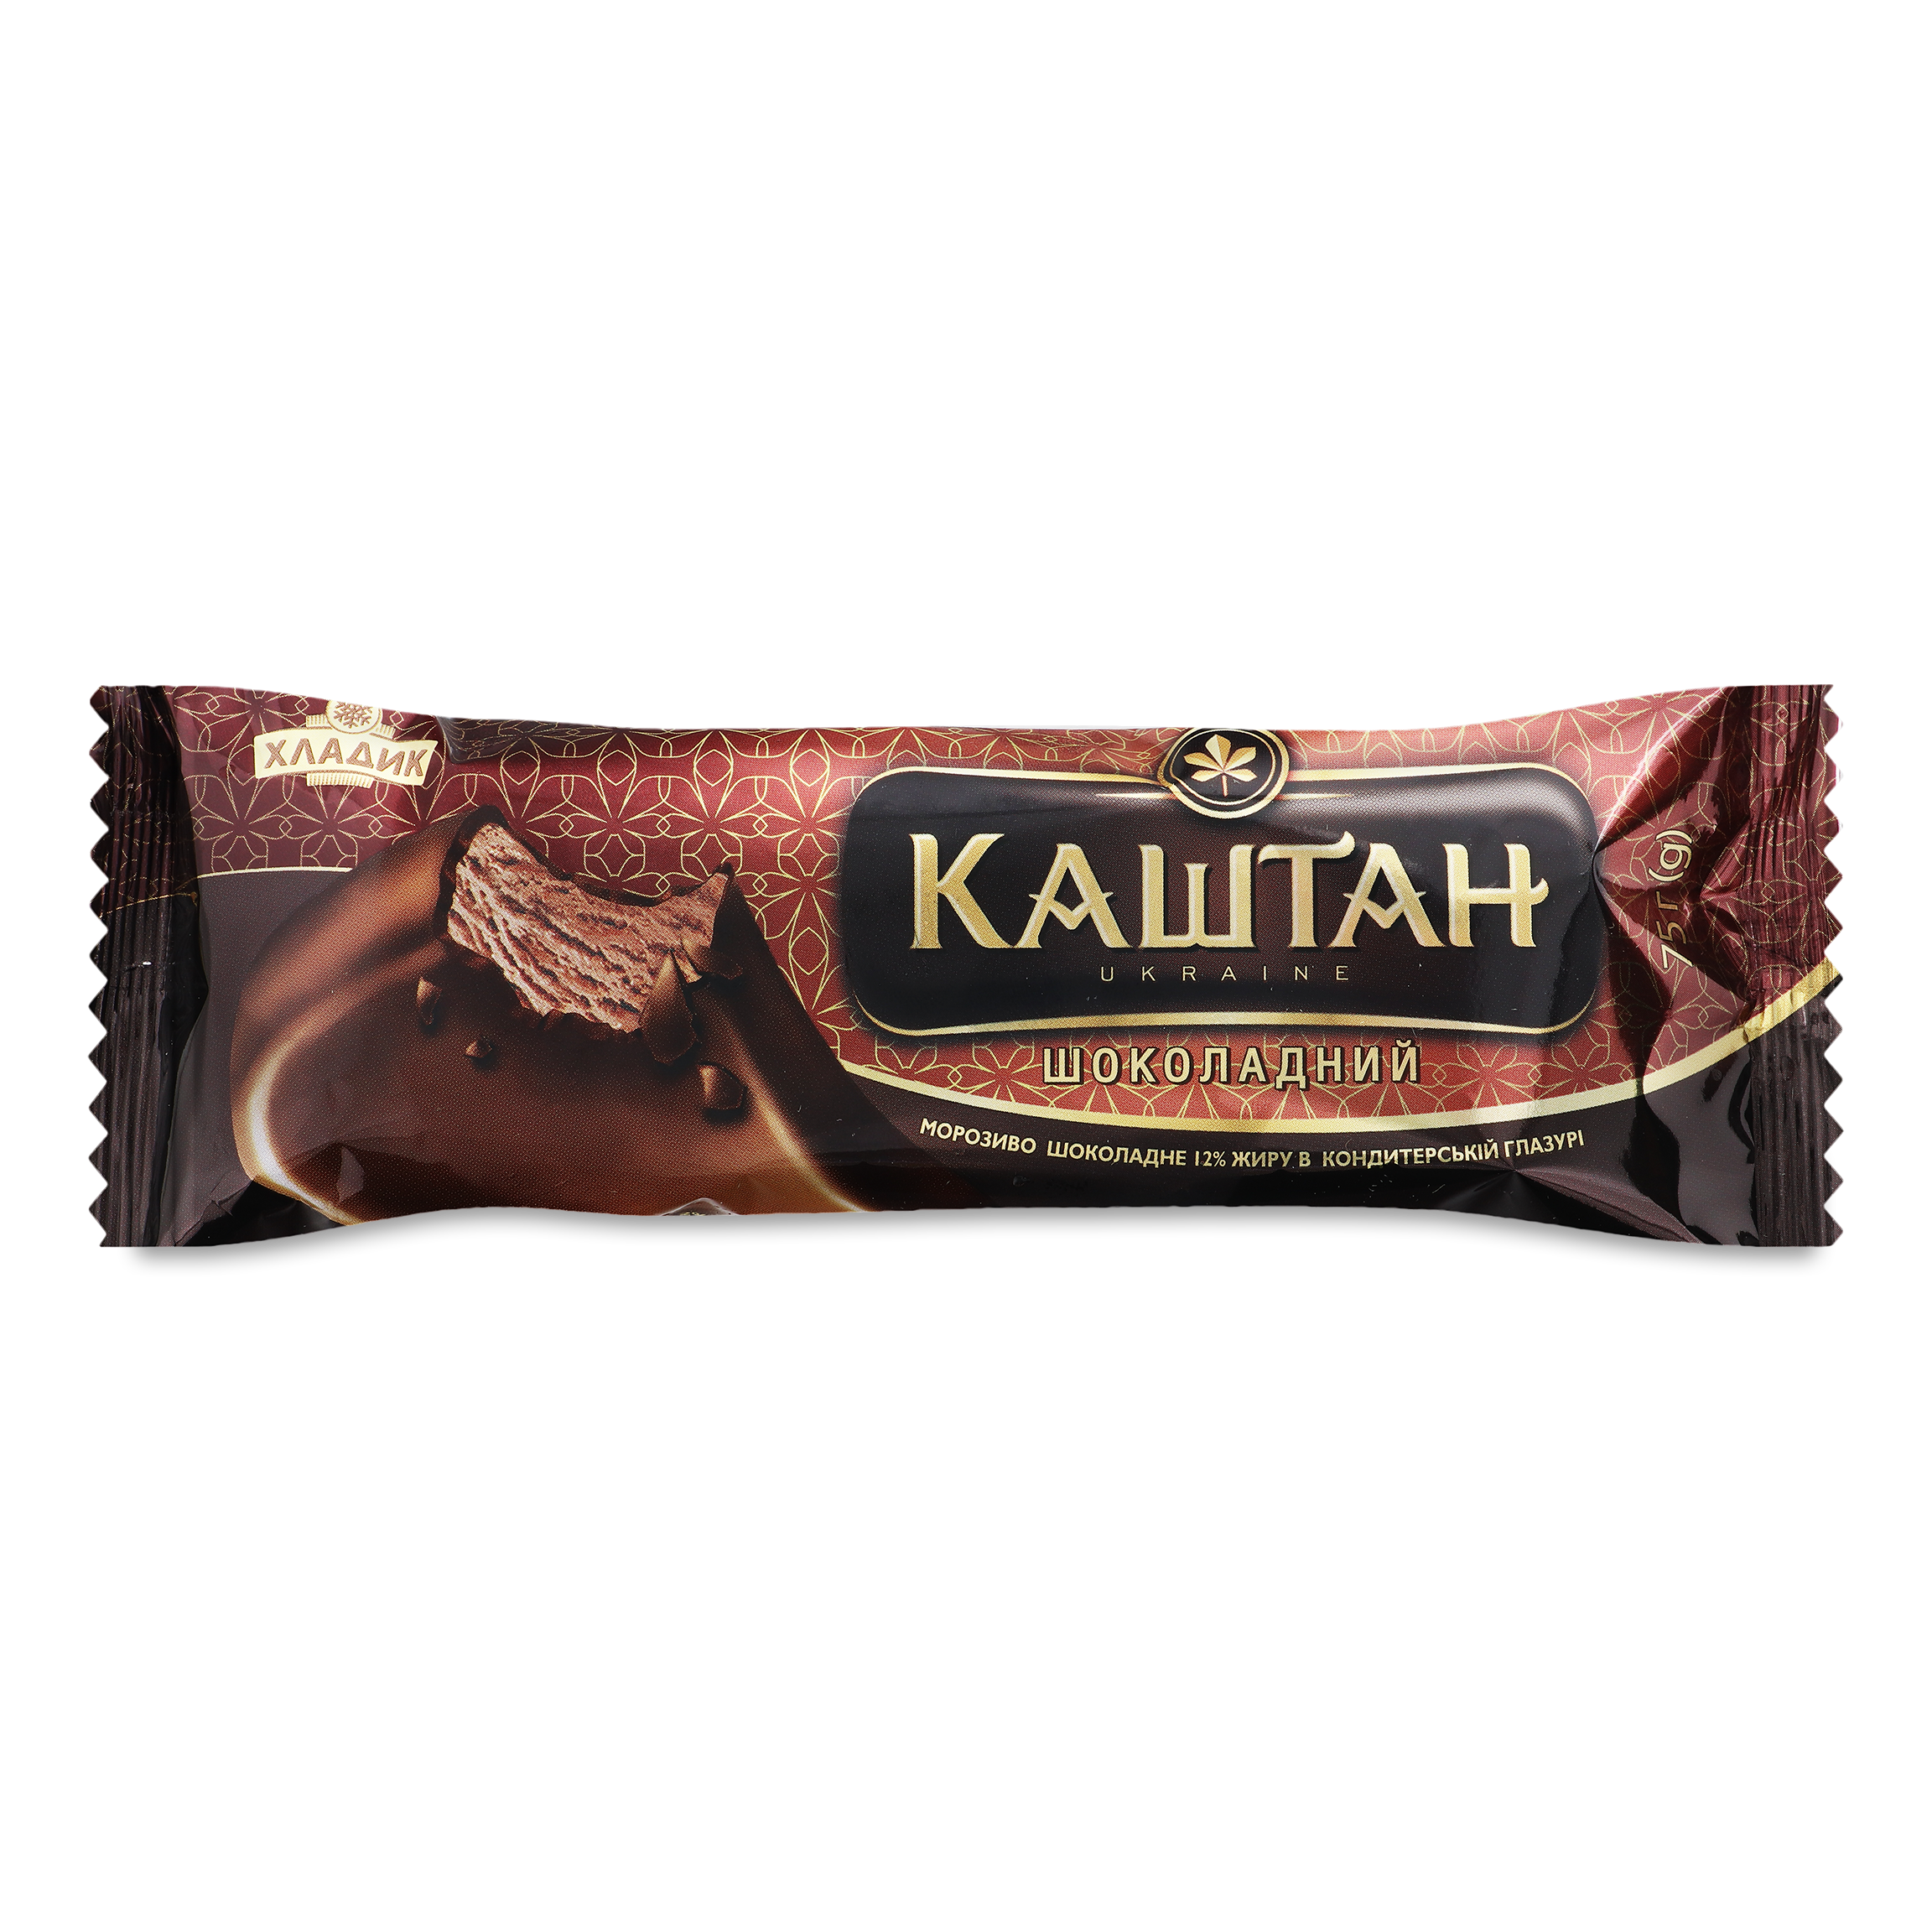 Морозиво Хладик Каштан Шоколадний пломбір шоколадний в кондитерській глазурі 75г 2